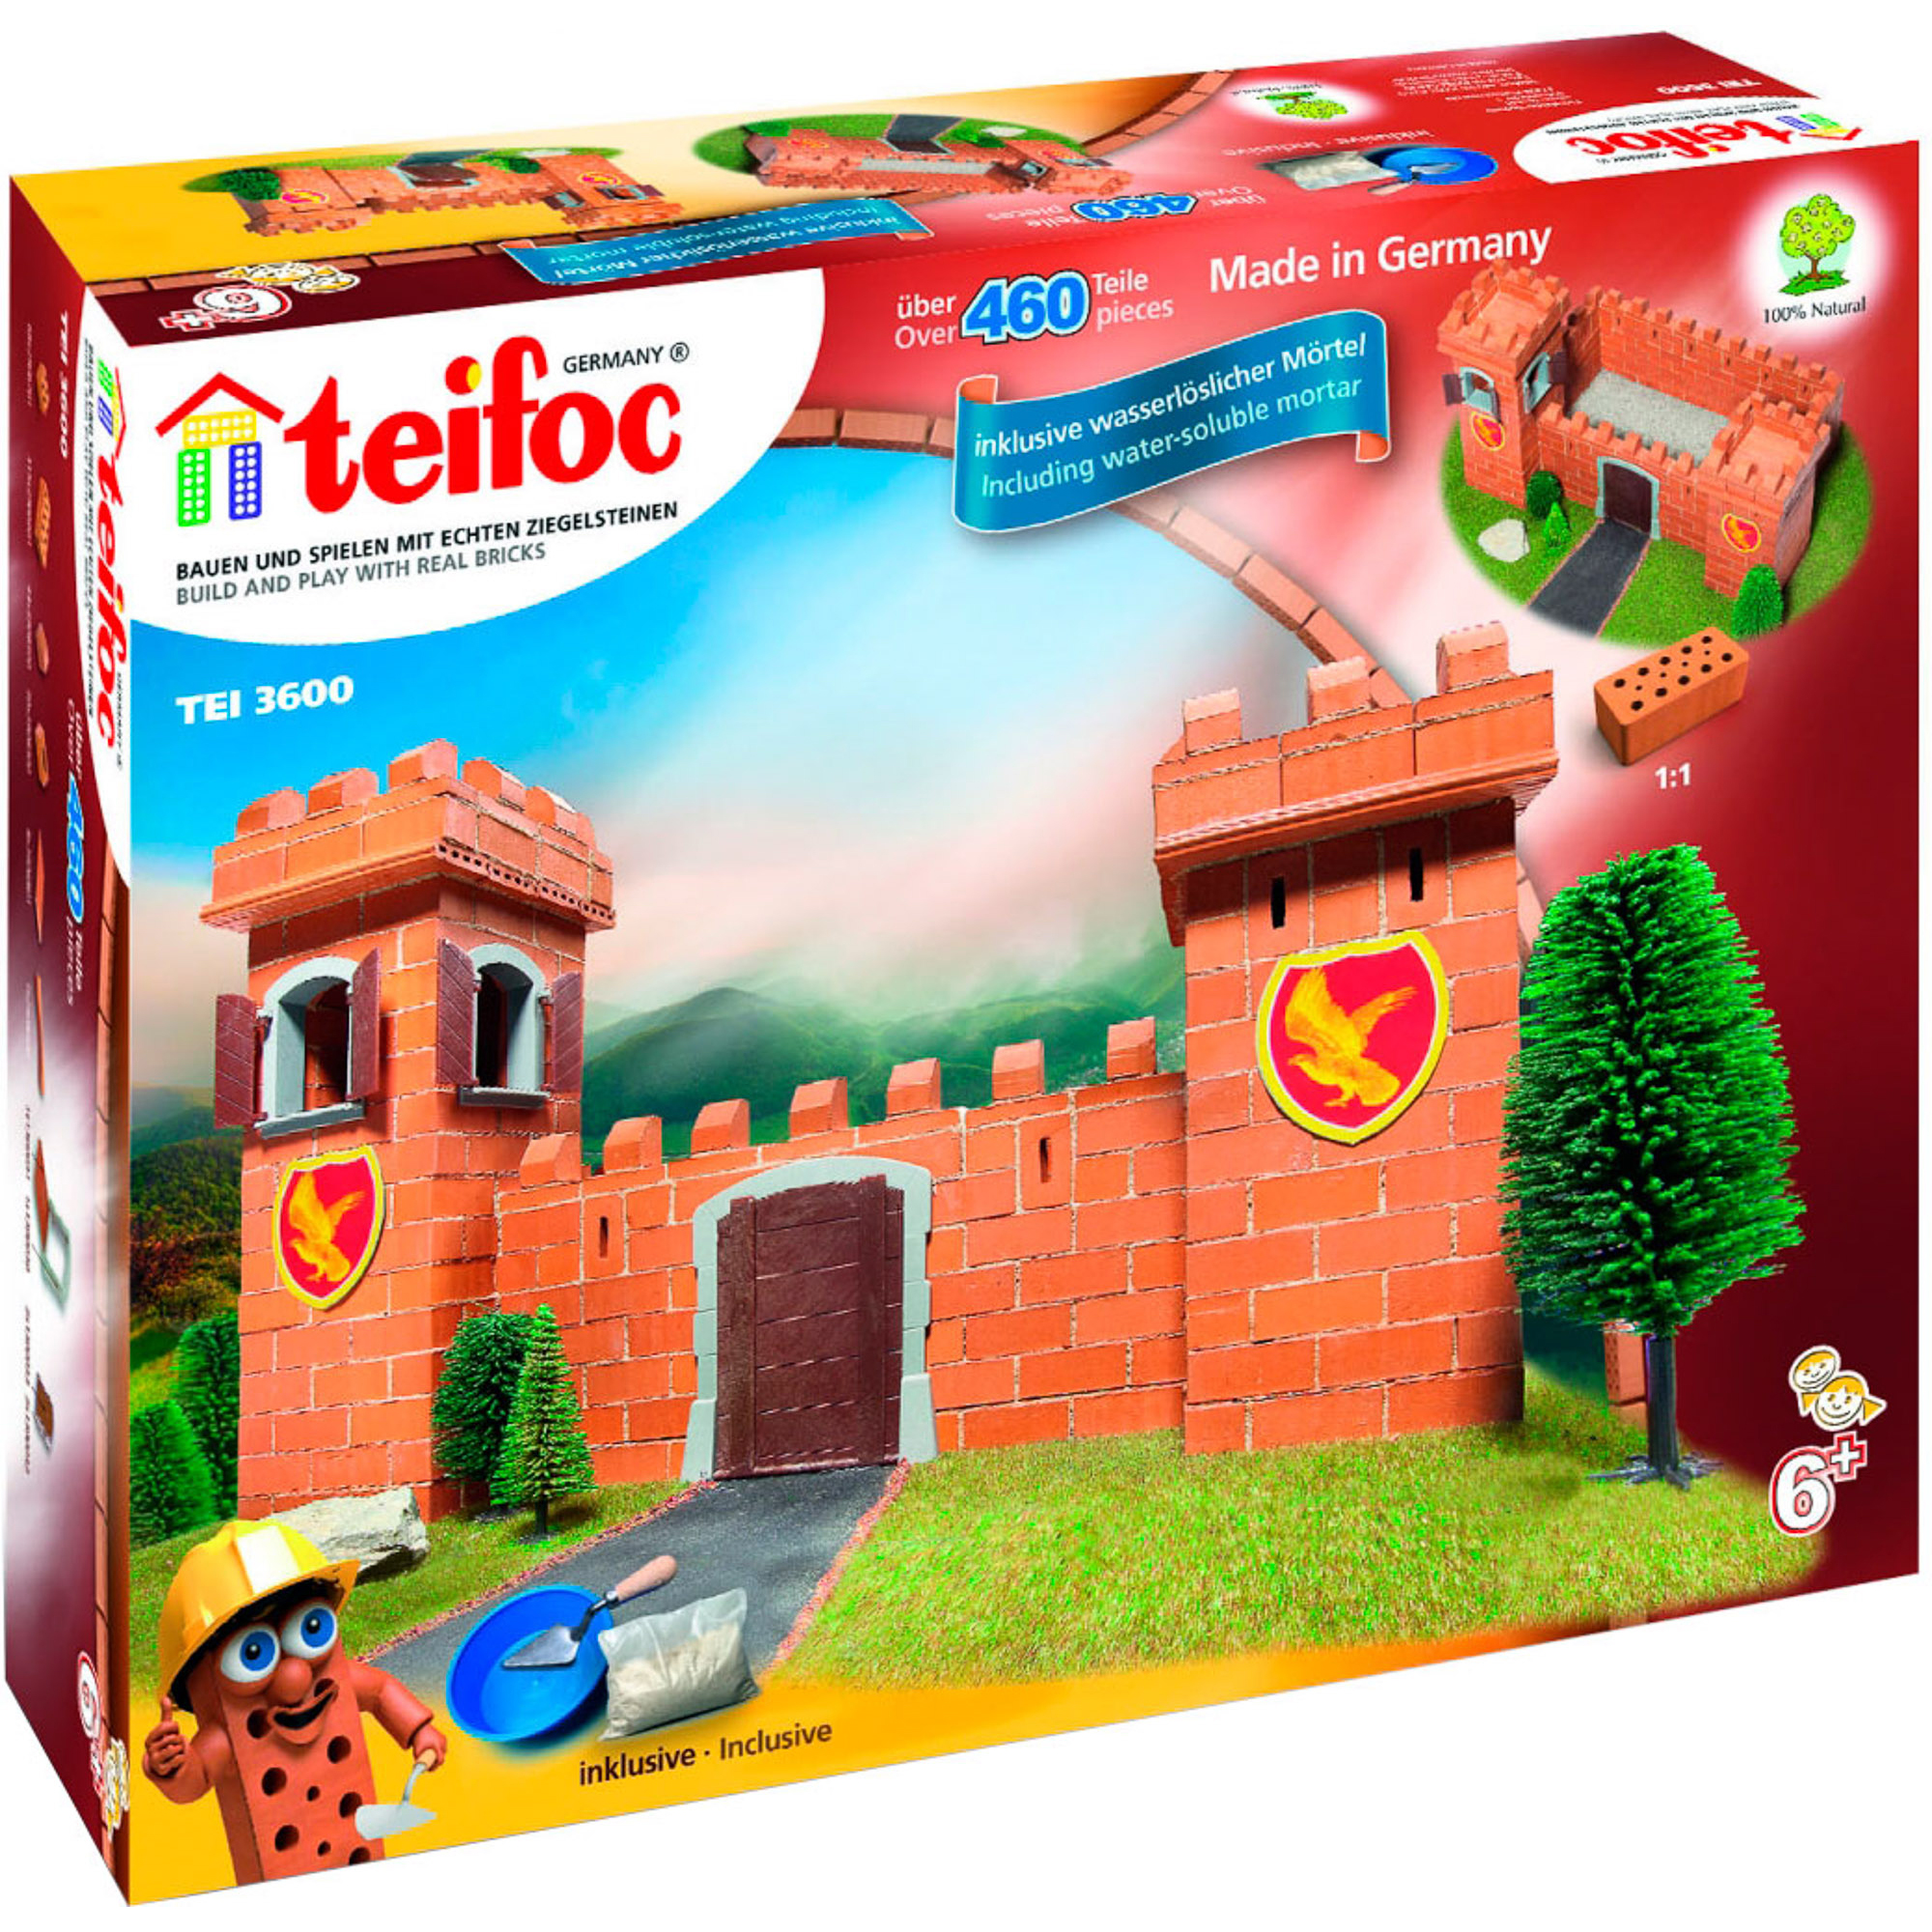 Игровой набор TEIFOC Рыцарский замок TEI 3600 игровой набор из картона рыцарский замок